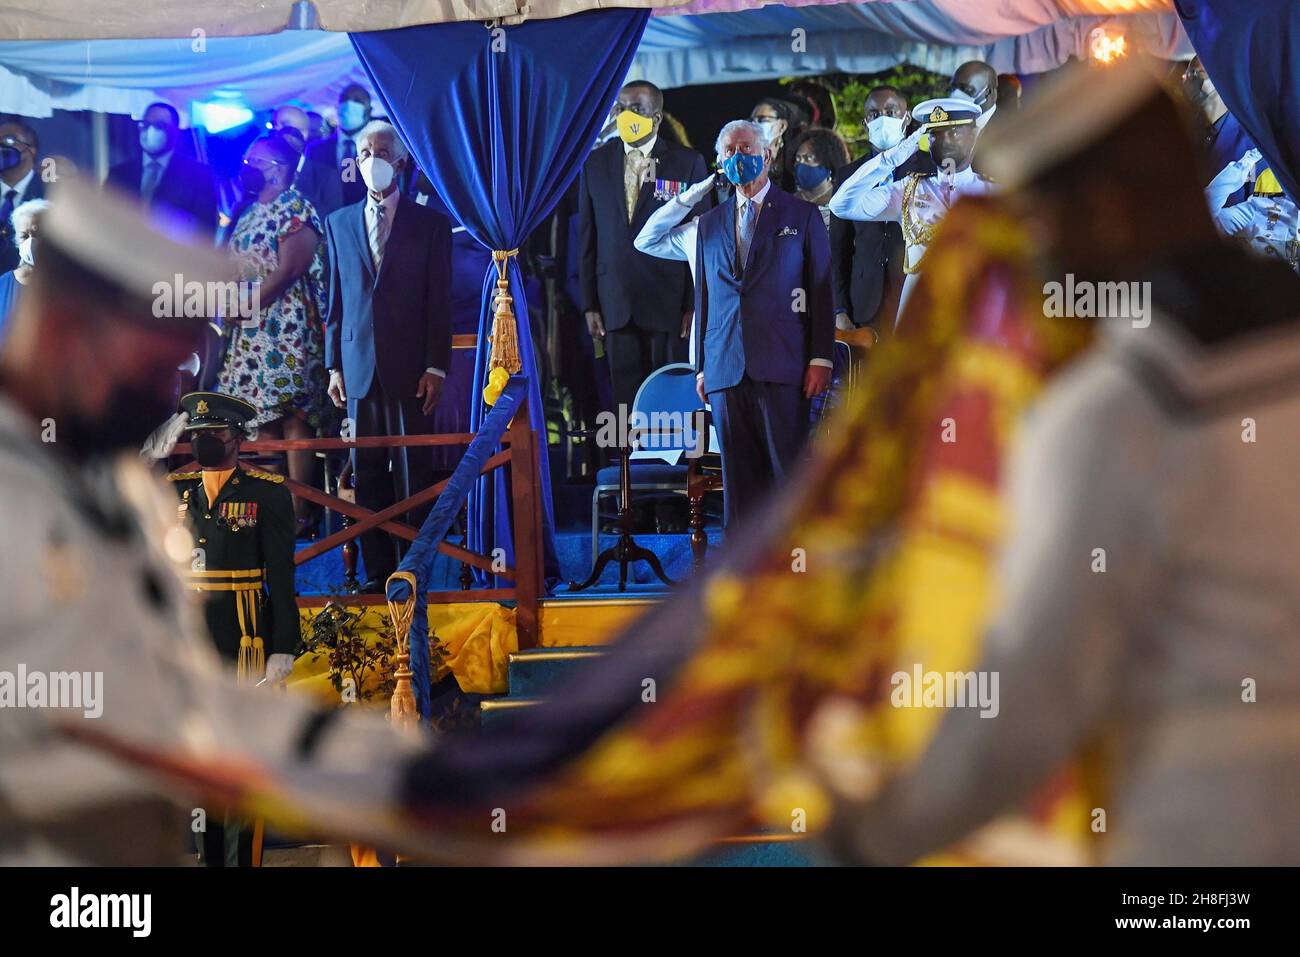 Der Prinz von Wales reagiert, als die britische Royal Standard-Flagge gefaltet wird, nachdem sie bei der Einweihungszeremonie des Präsidenten anlässlich der Geburt einer neuen republik in Barbados, Bridgetown, Barbados, gesenkt wurde. Bilddatum: Montag, 29. November 2021. Stockfoto